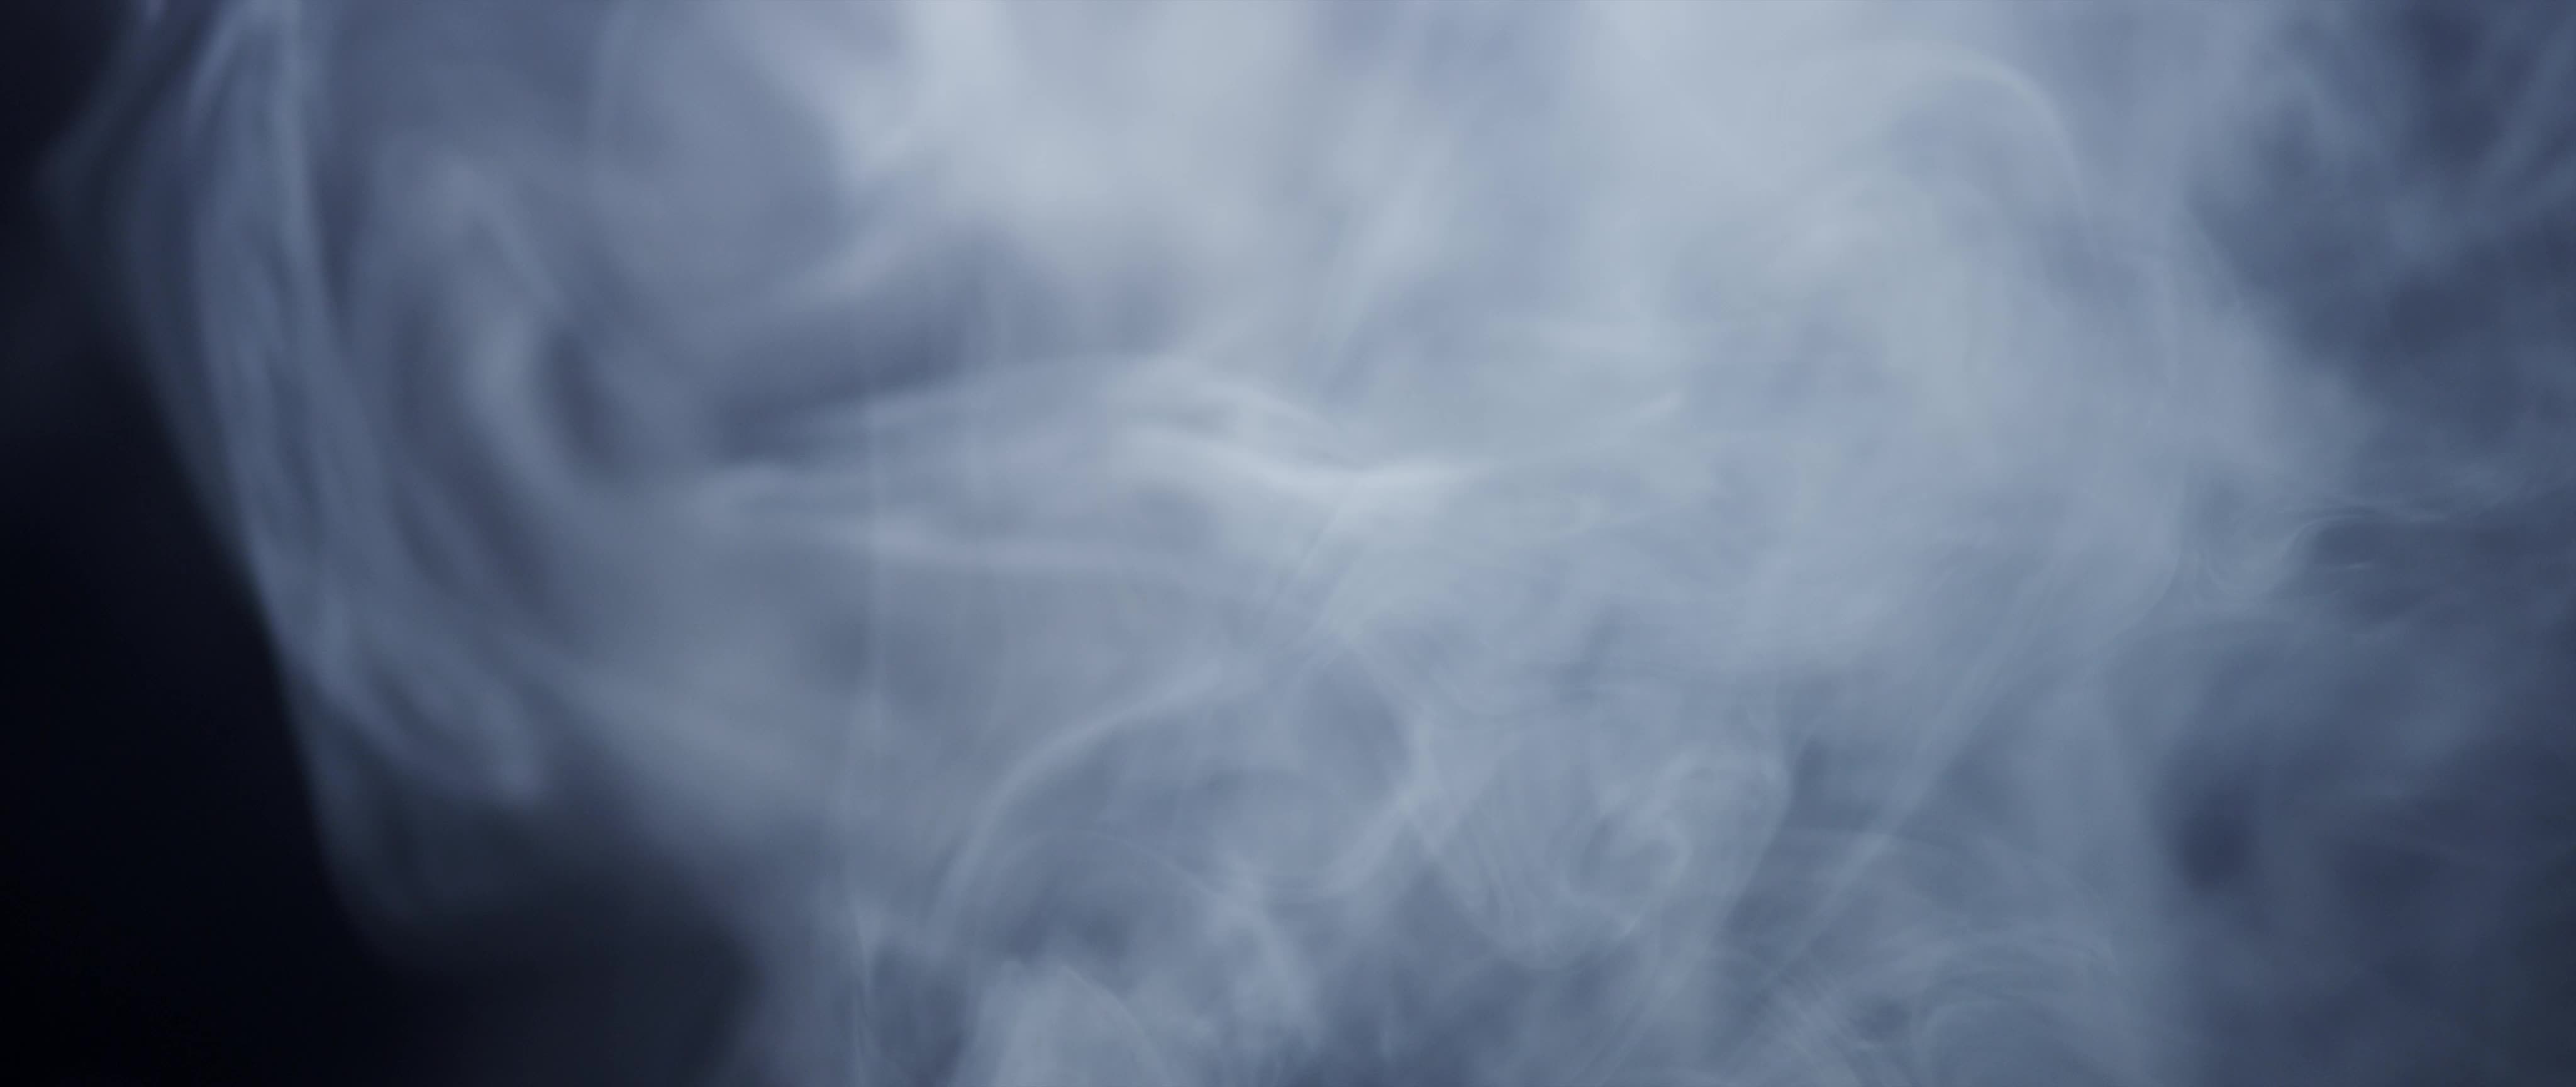 抽象艺术水墨烟雾特效视频素材